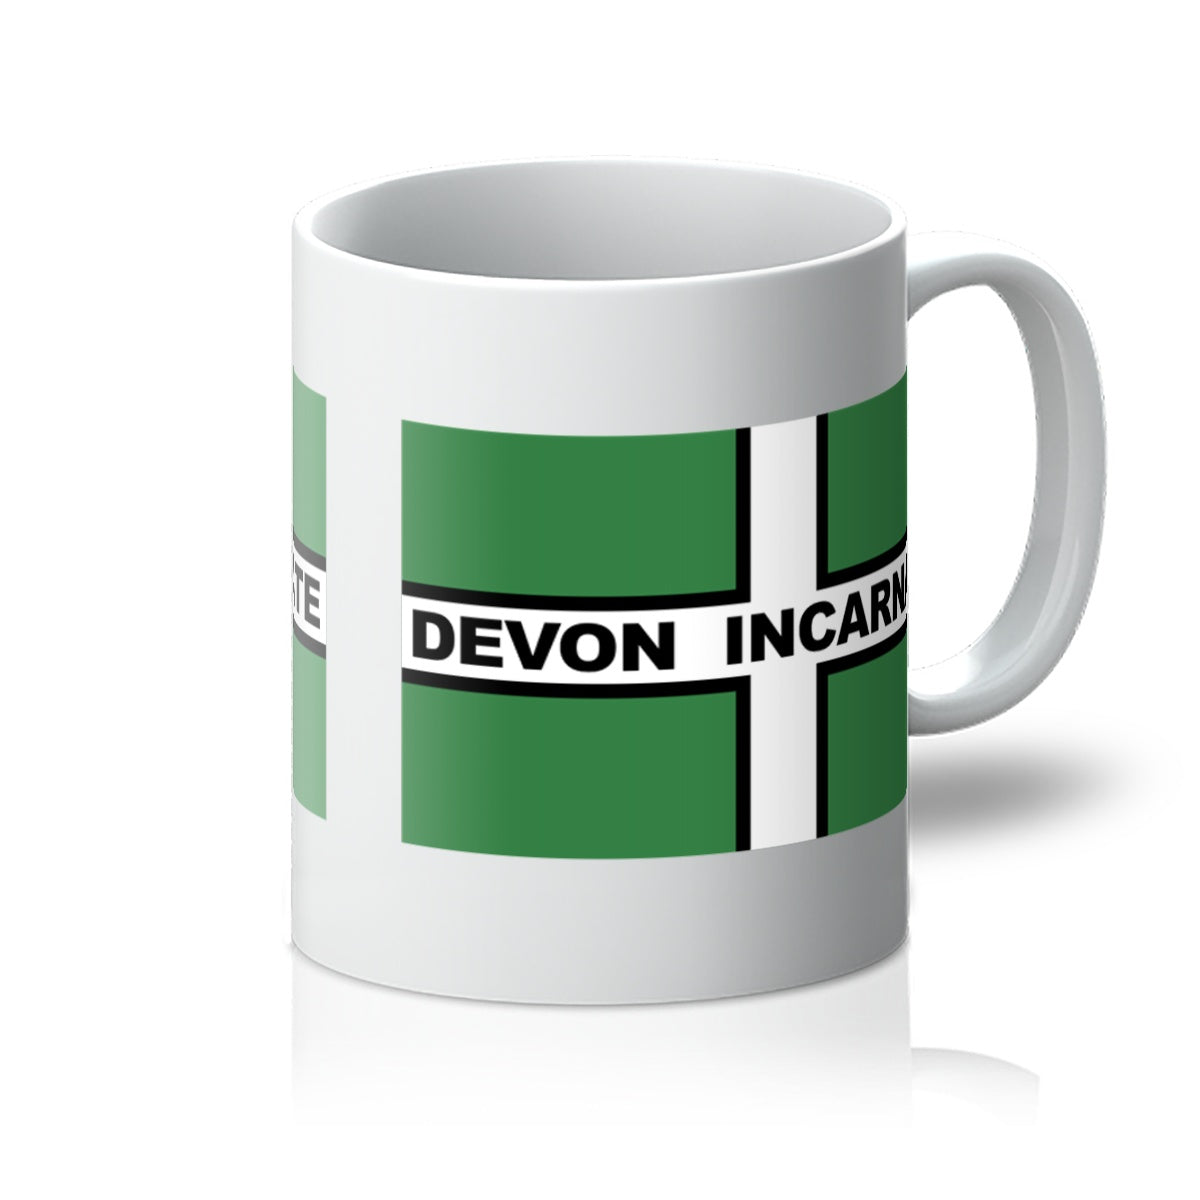 Devon Incarnate Mug